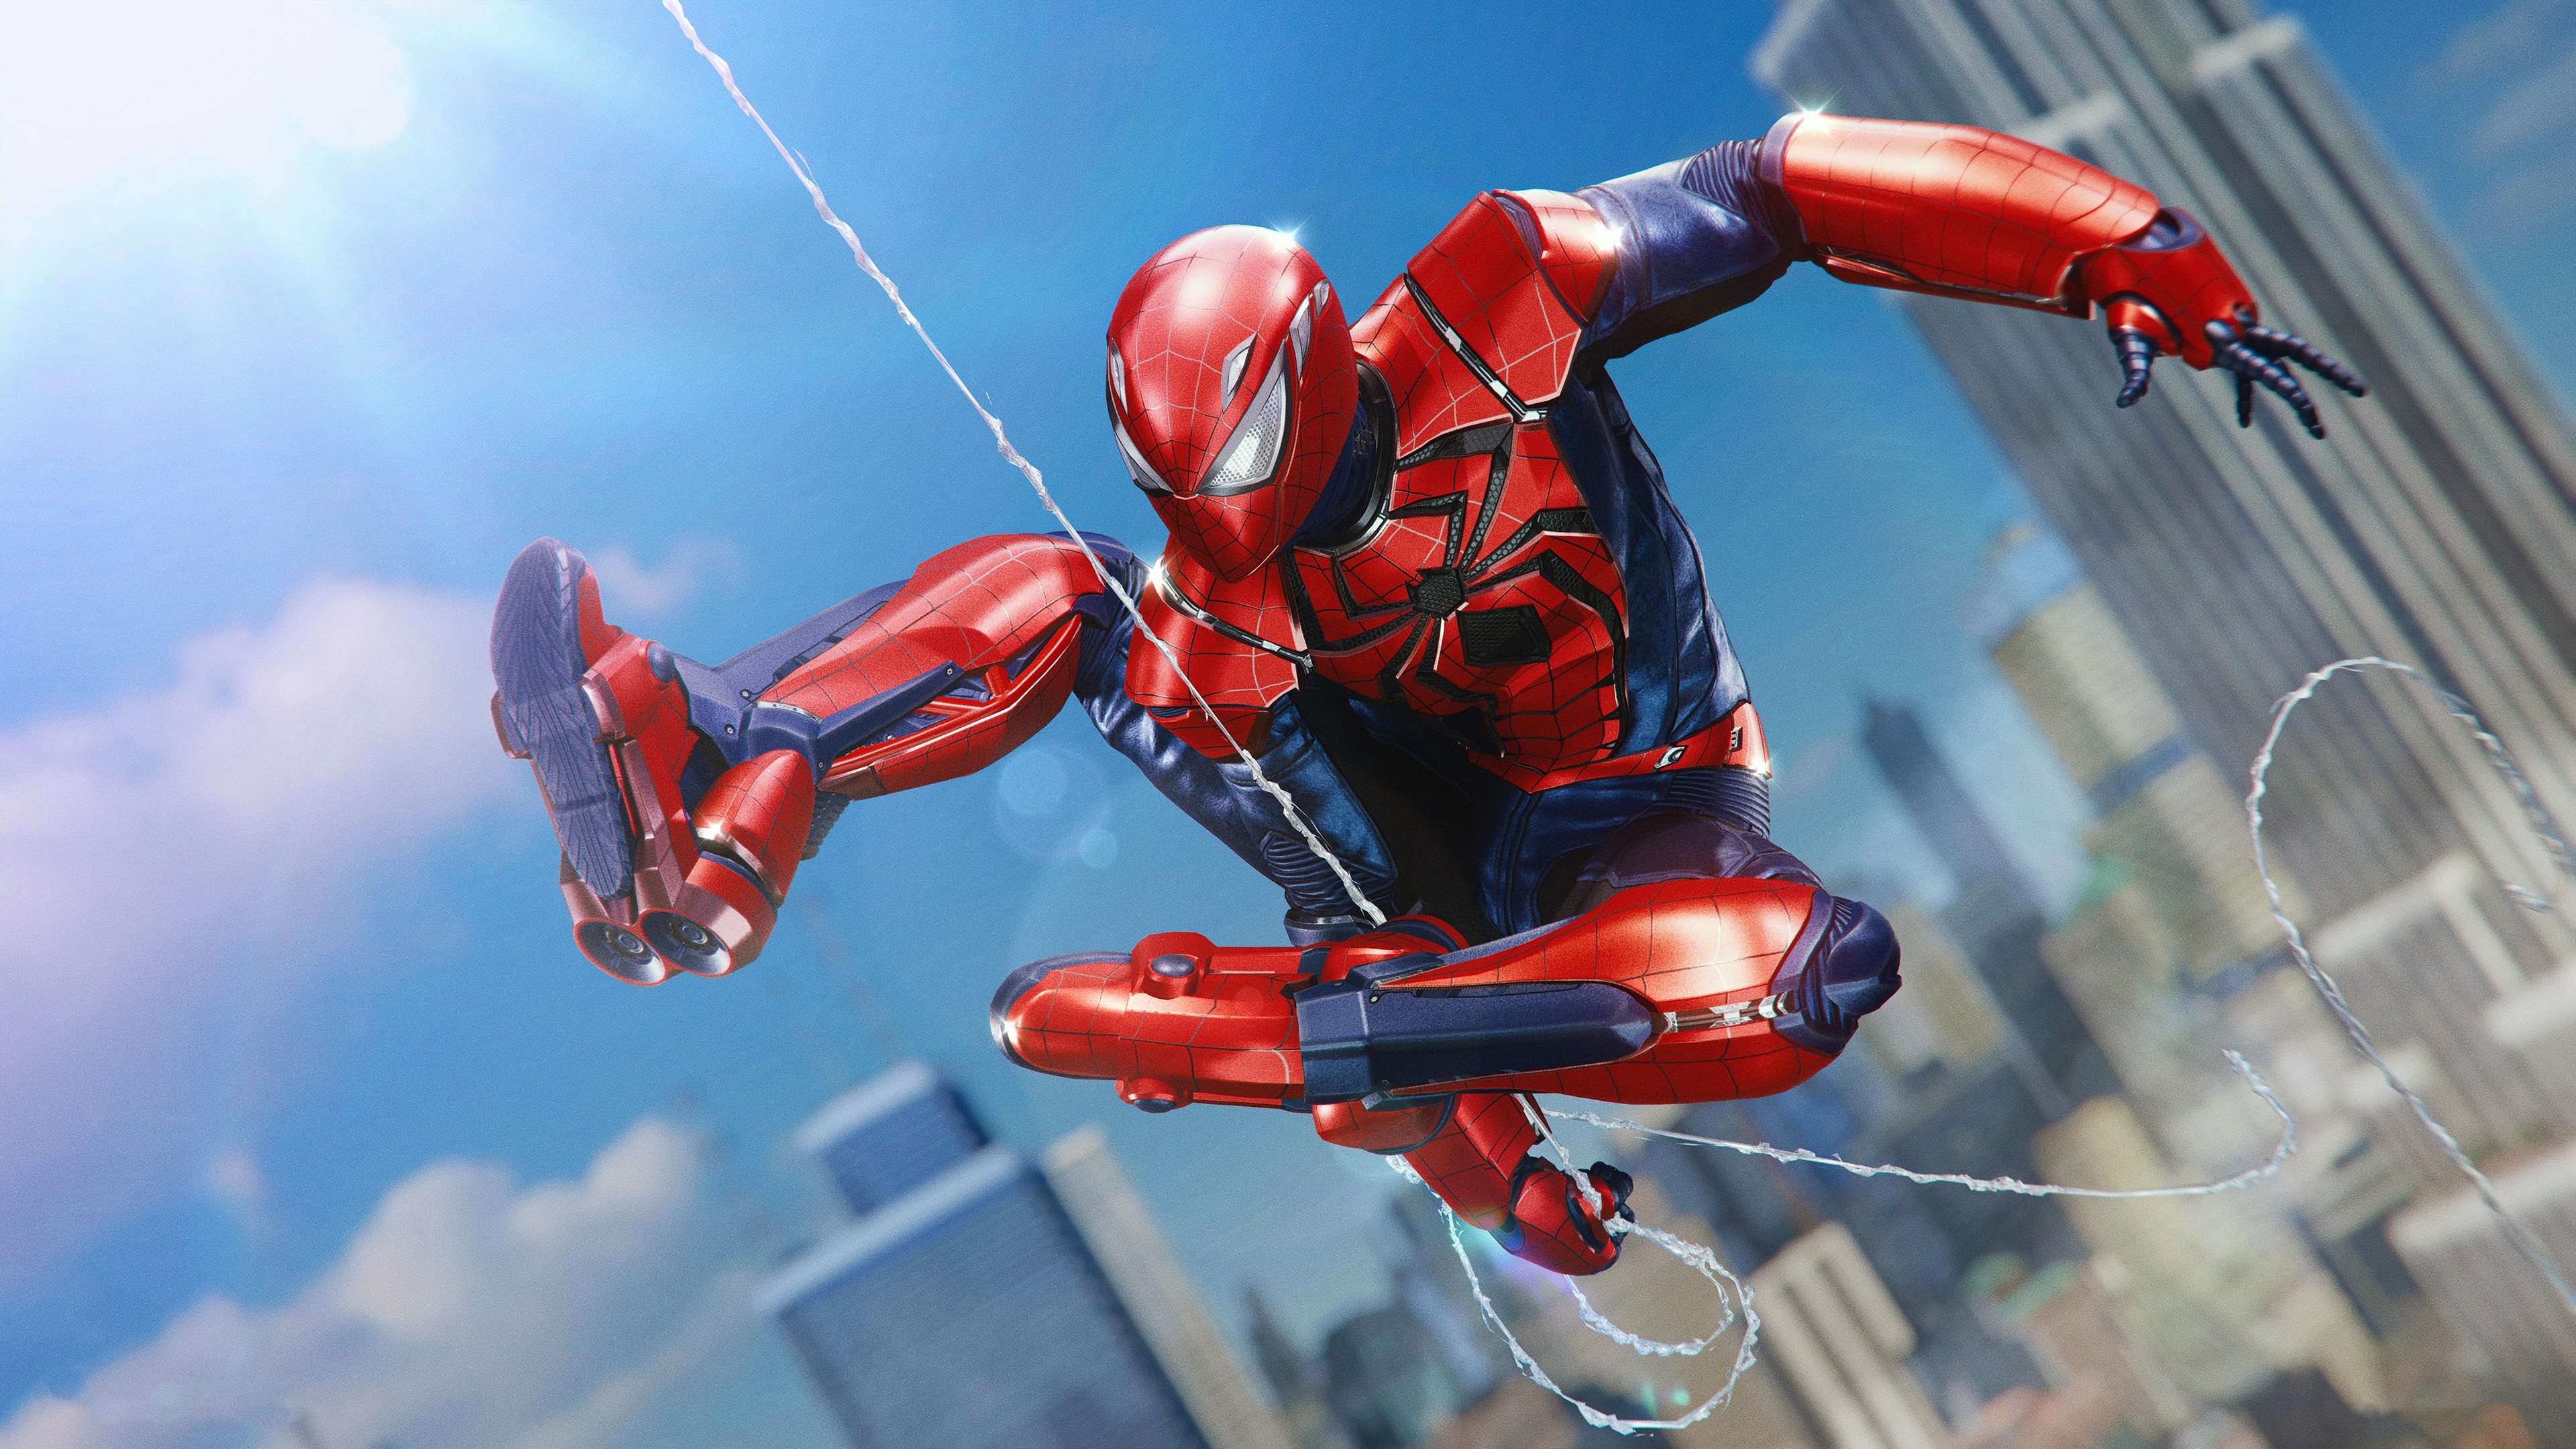 Fondos de Pantalla 3840x2160 Spiderman Héroe Salto Juegos descargar imagenes